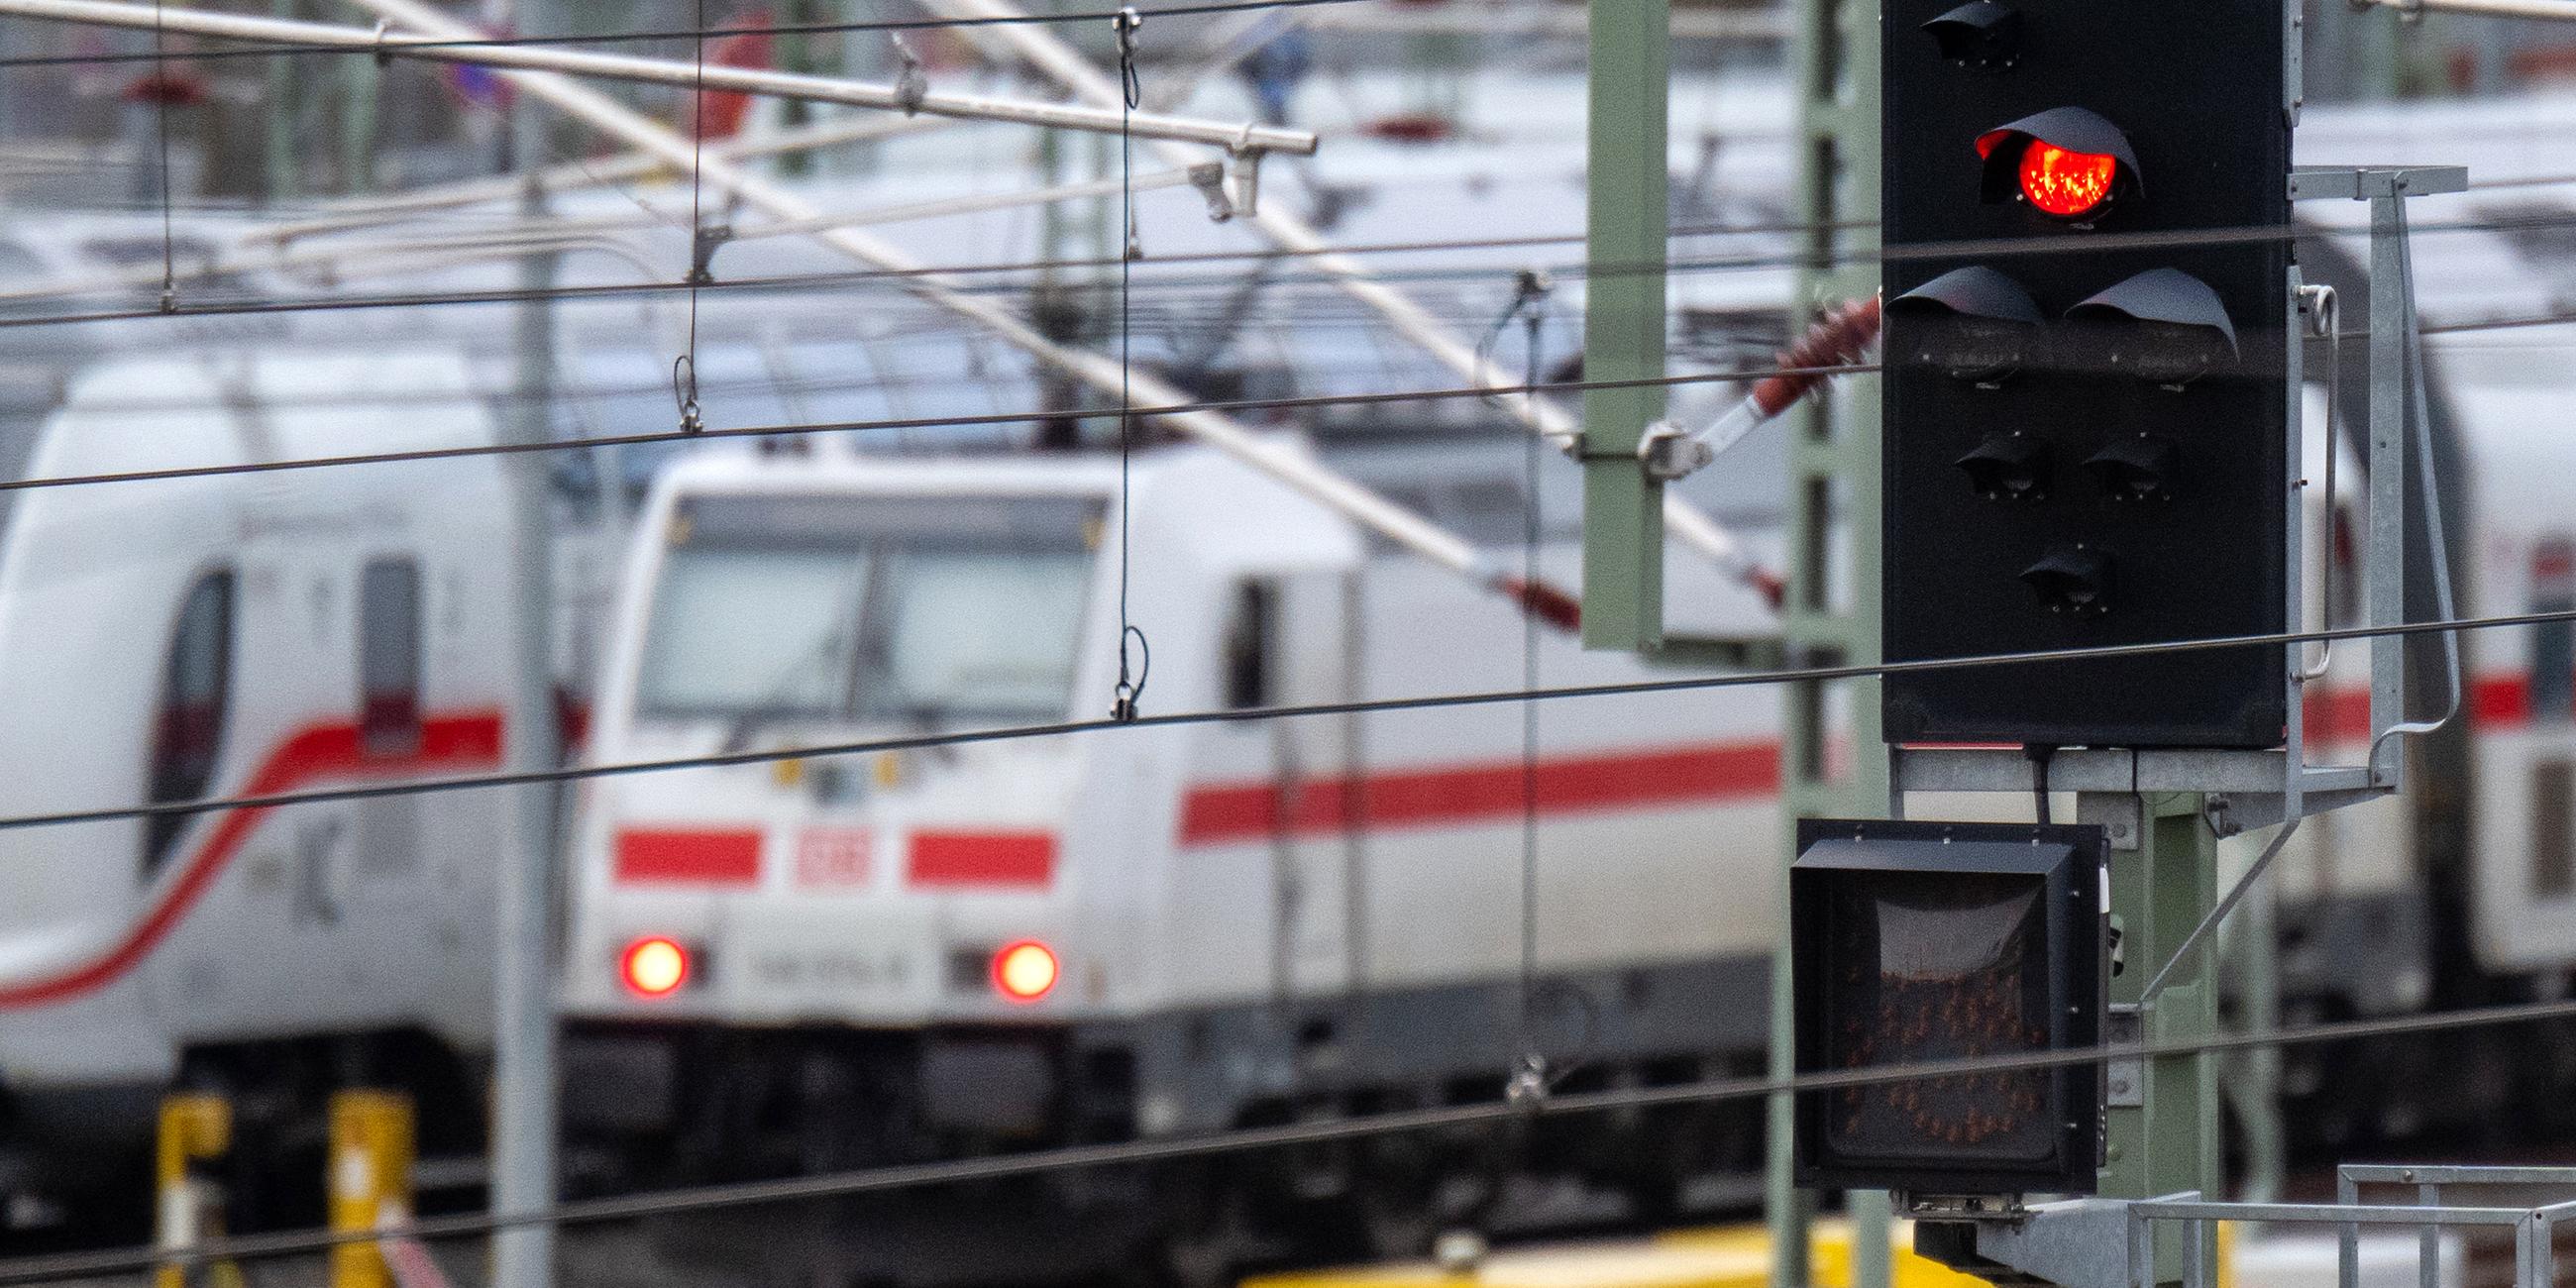 Züge der Deutschen Bahn stehen hinter einem roten Signal im Bereich des Hauptbahnhofes von Leipzig, aufgenommen am 23.03.2023 in Leipzig